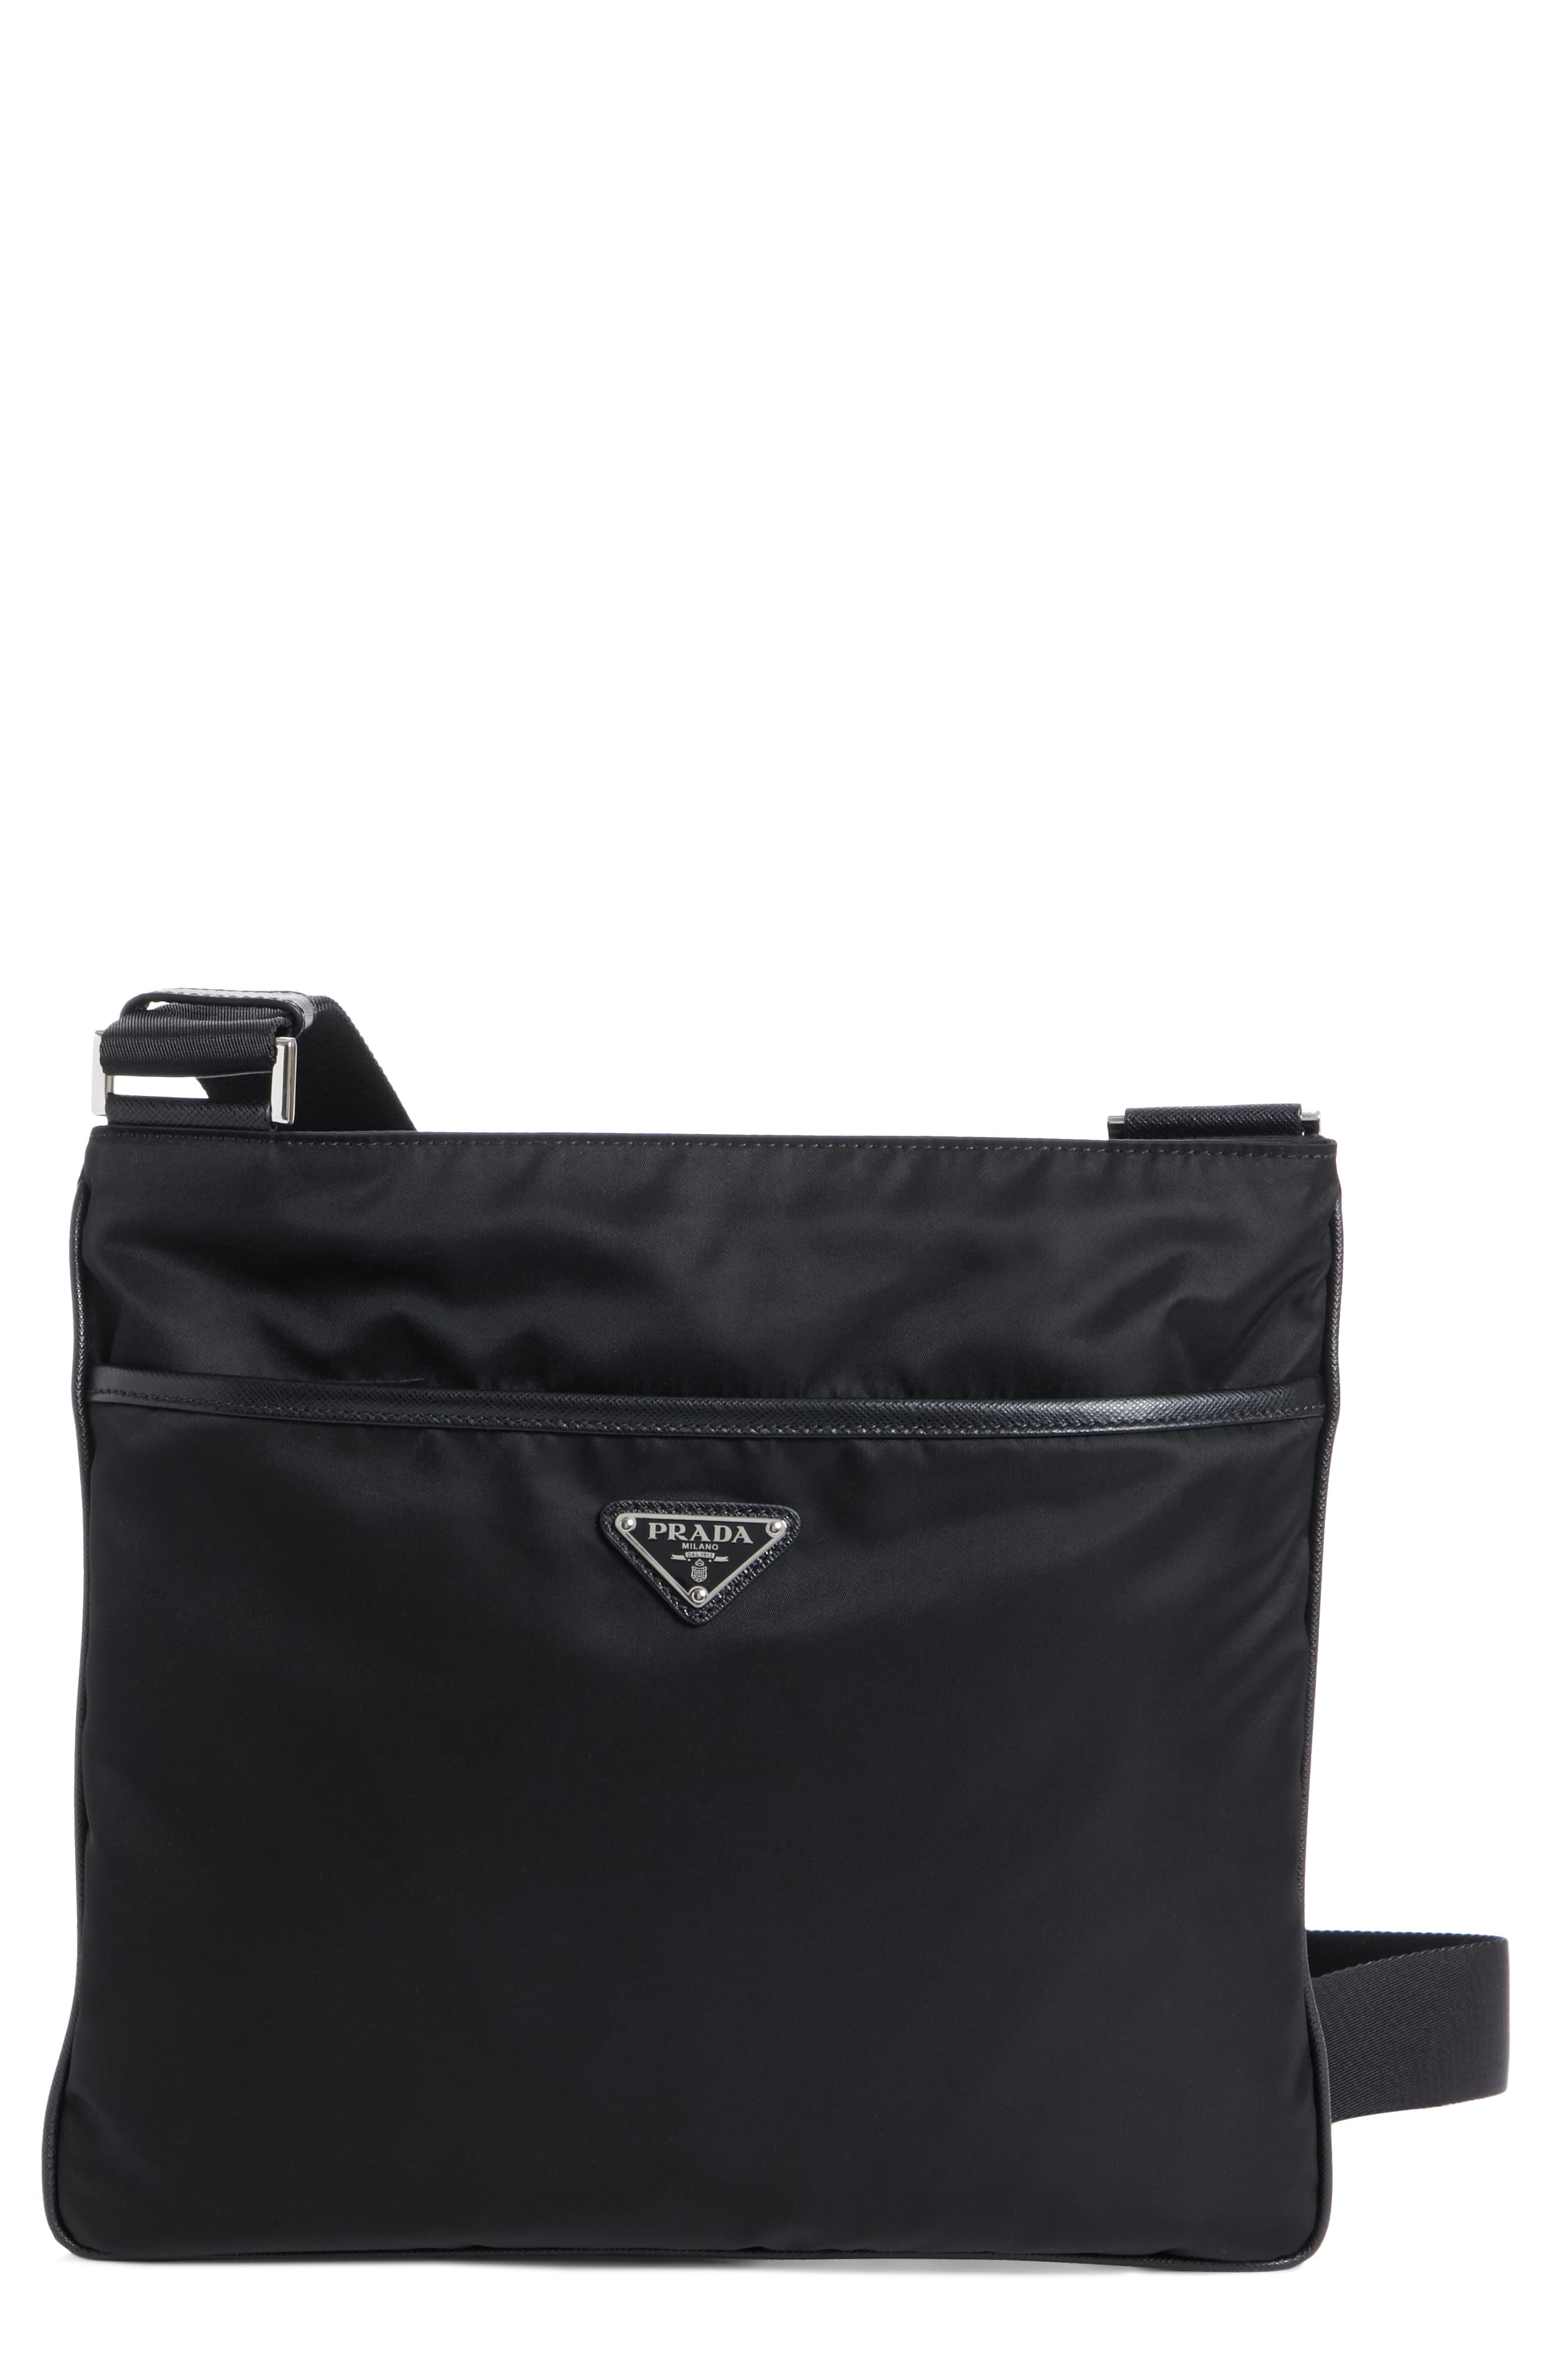 Prada Men's Handbags & Purses For Men's | semashow.com